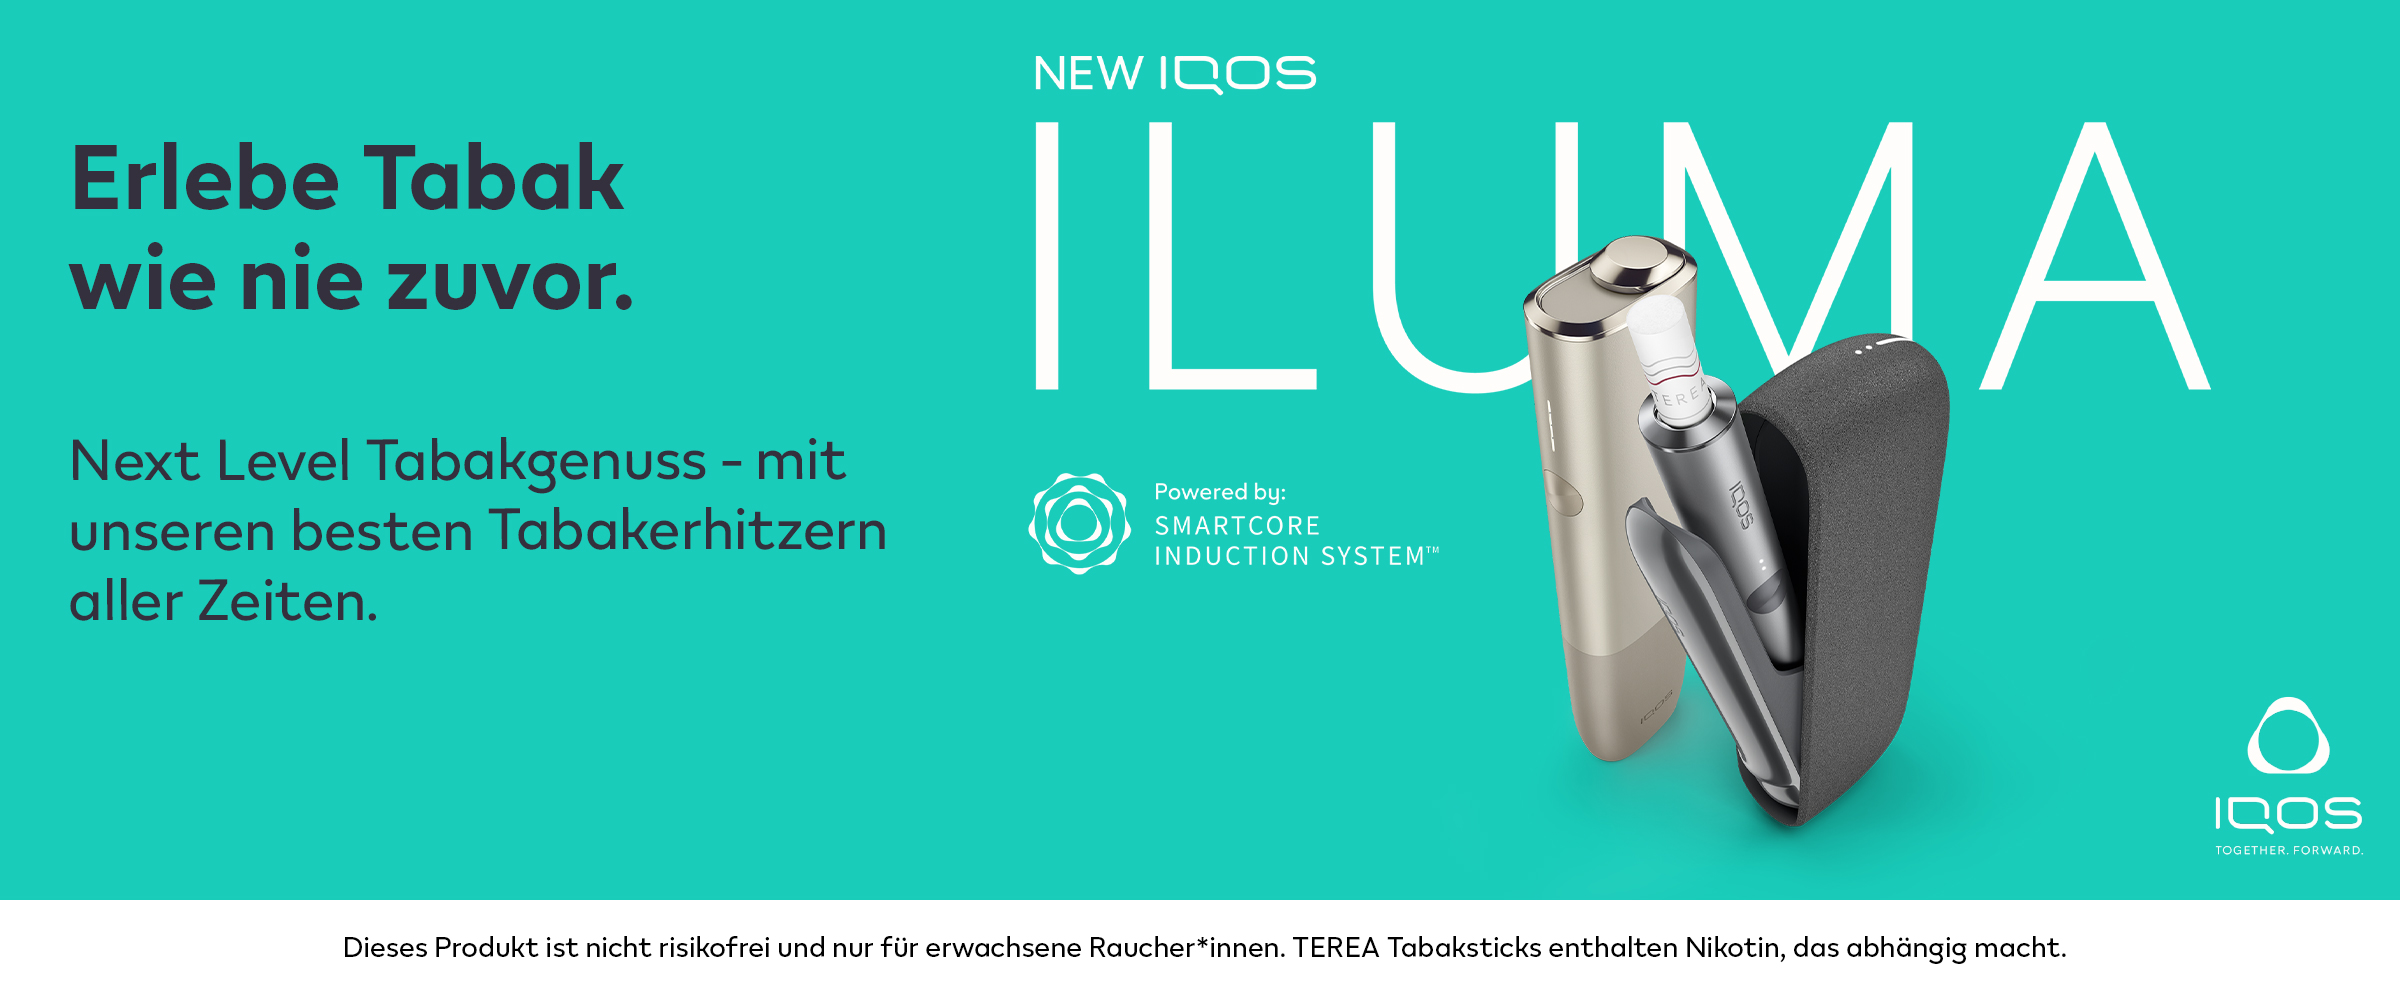 IQOS TEREA Tabaksticks für ILUMA online günstig kaufen